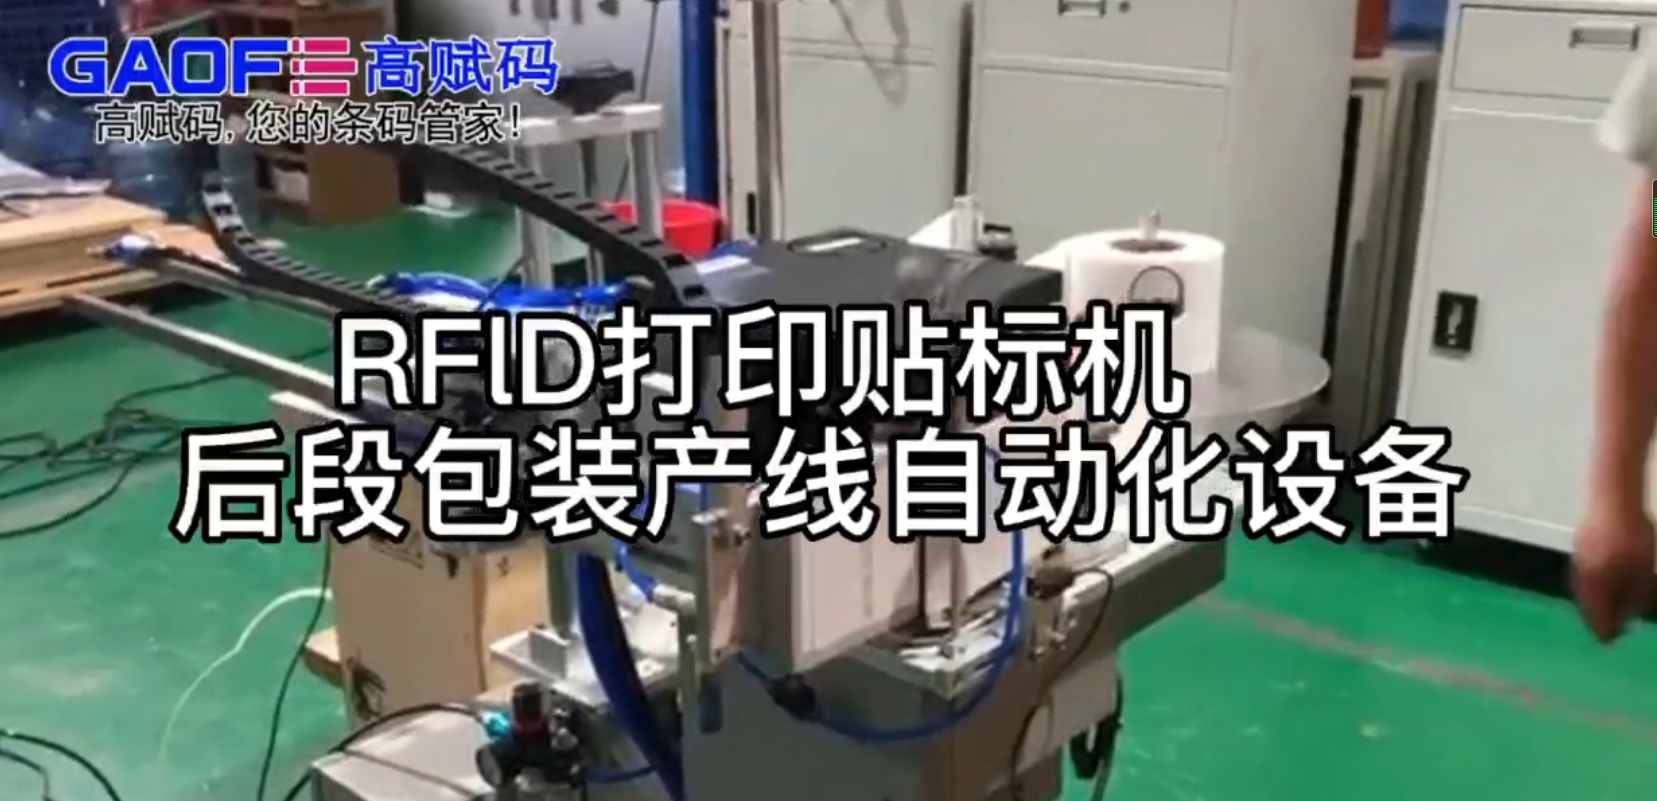 RFlD打印贴标机   后段包装产线自动化设备